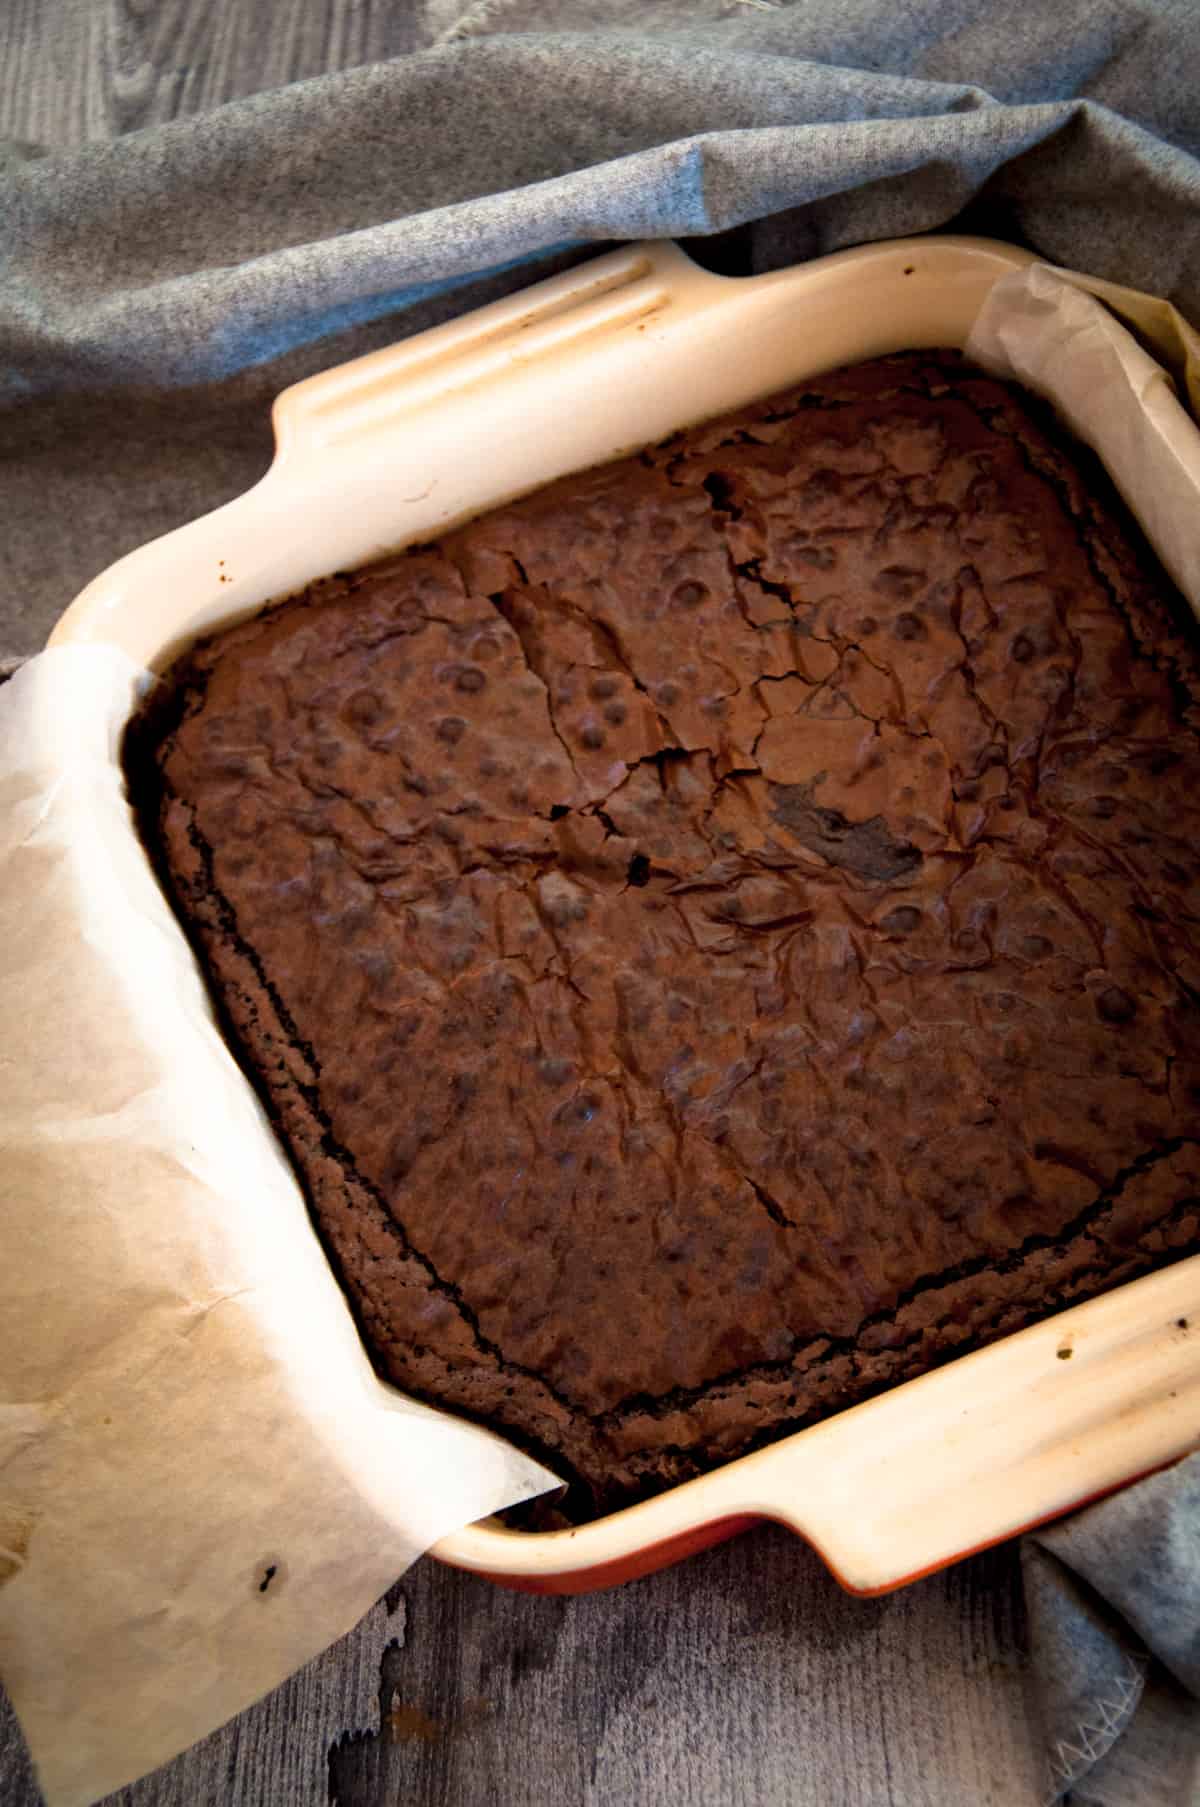 Feshly baked oil brownie in the pan.